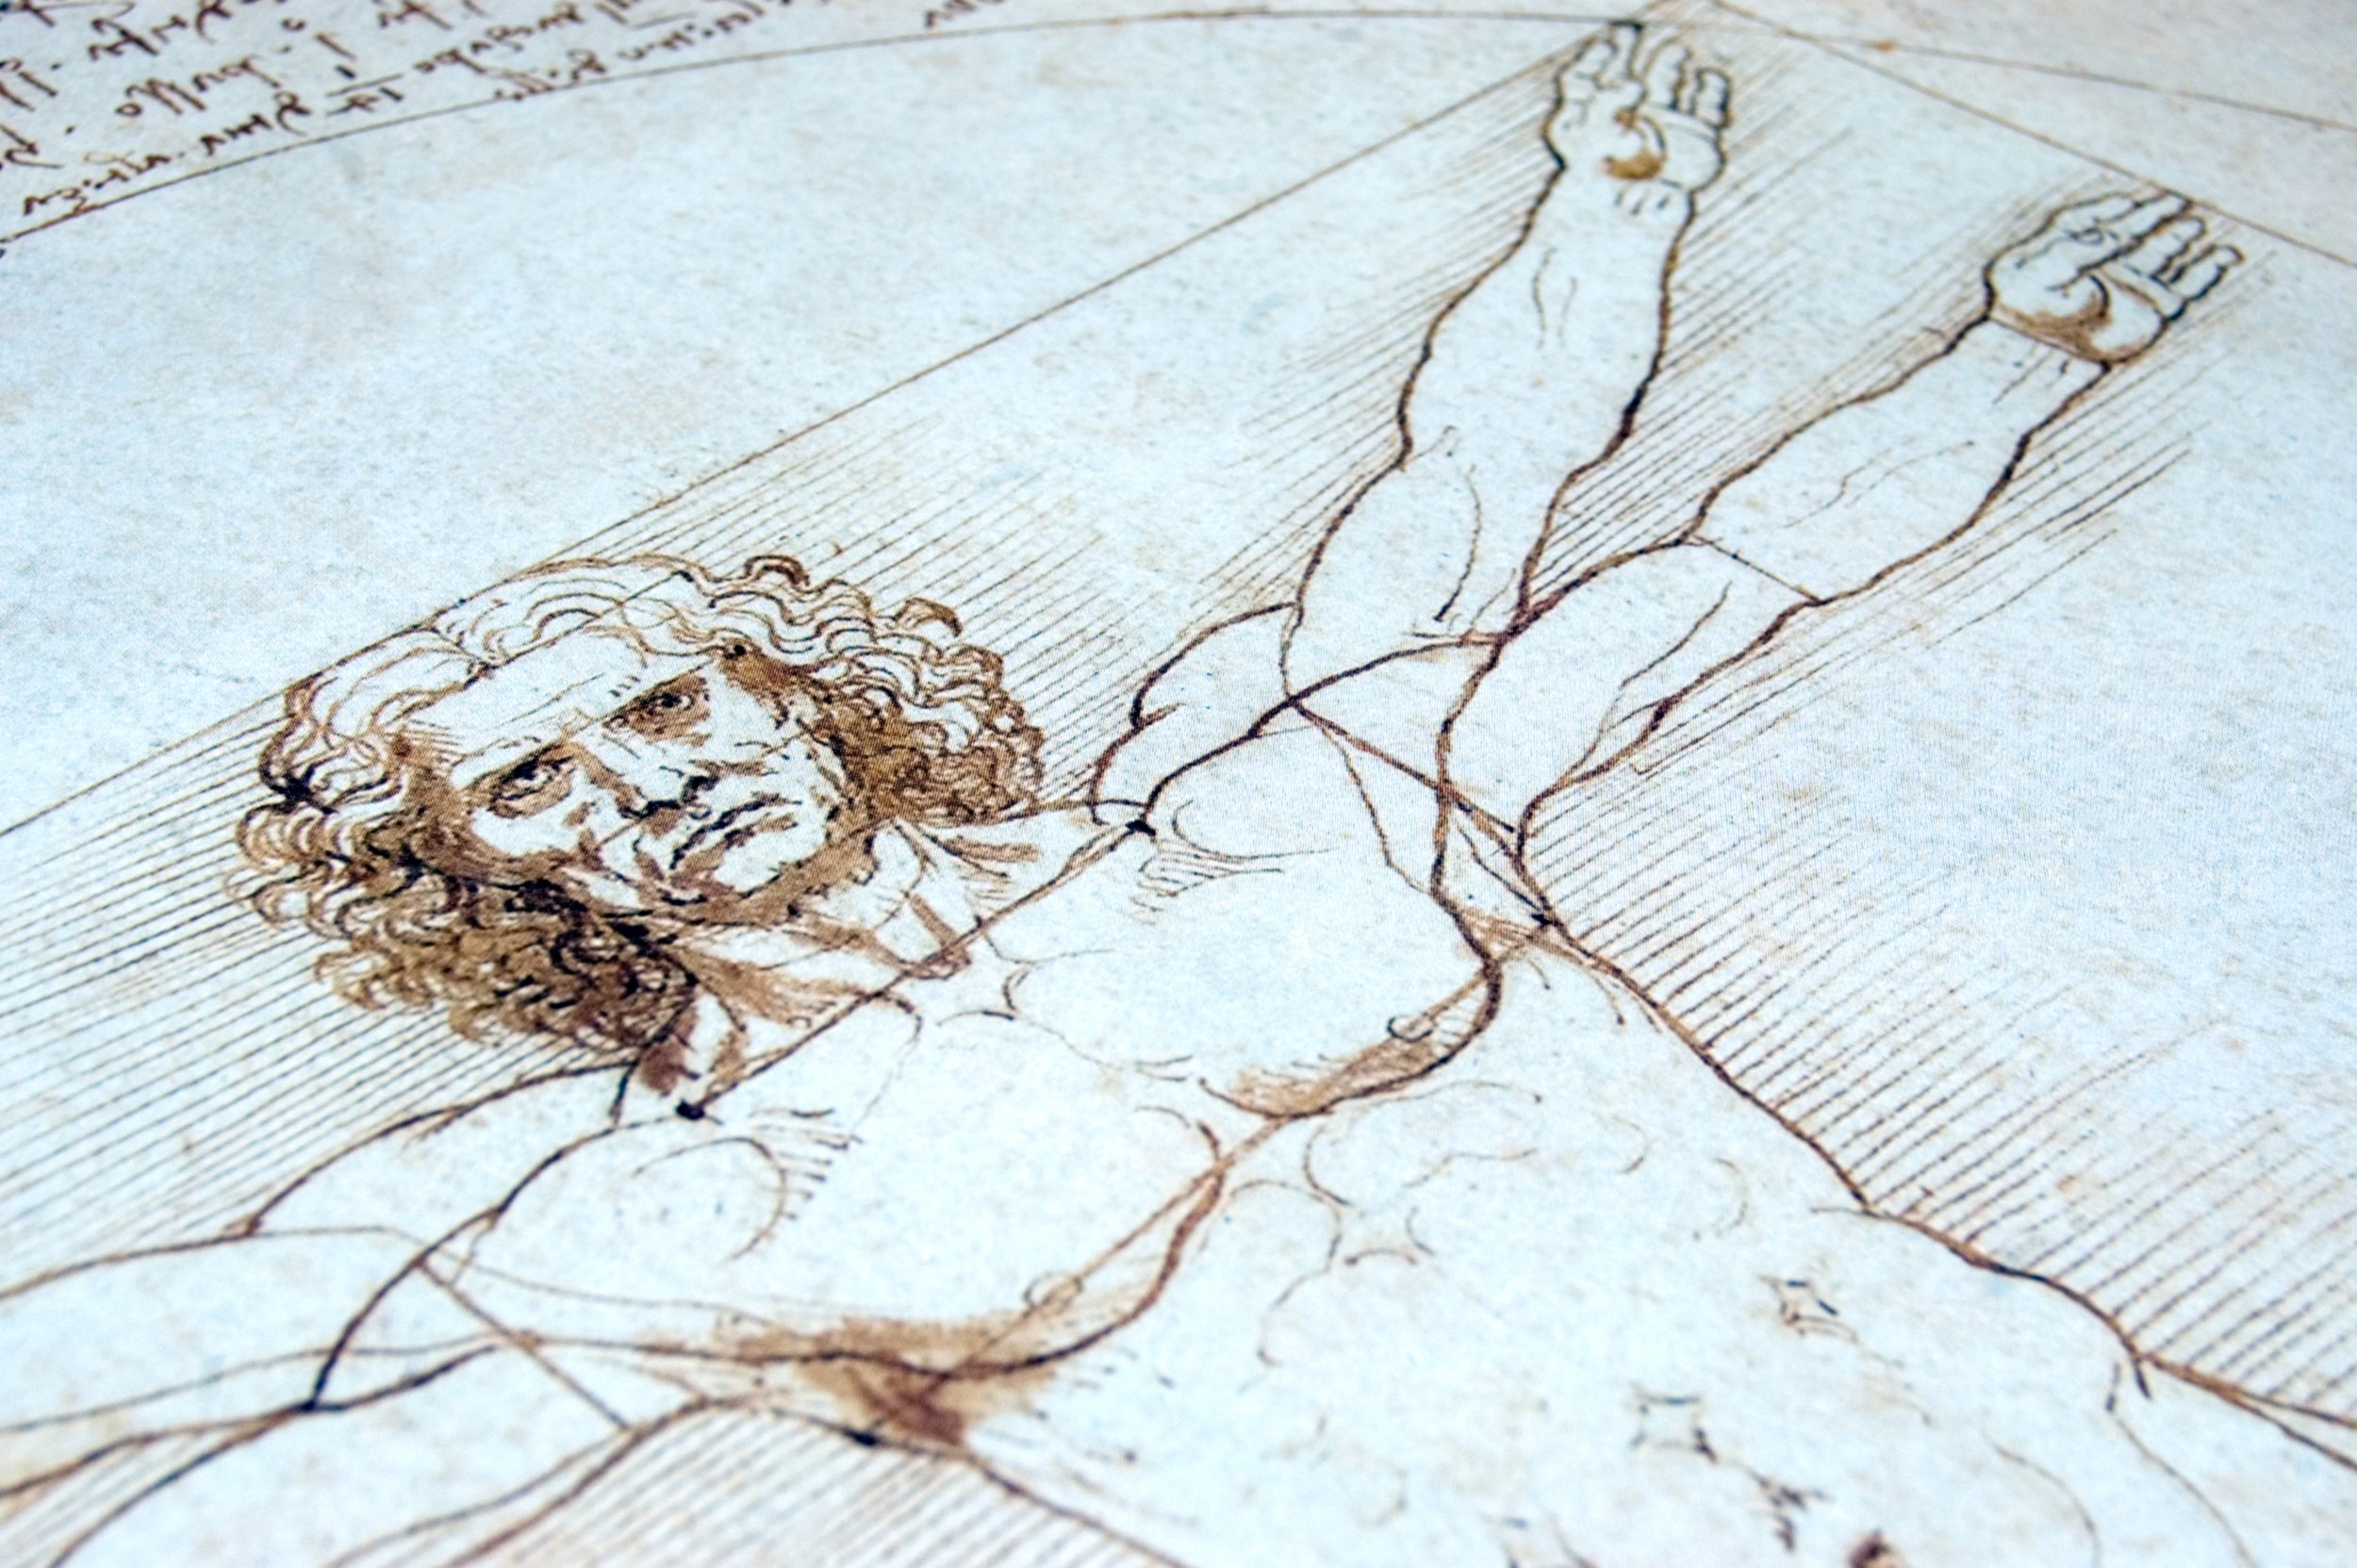 Леонардо да Винчи Витрувианский человек